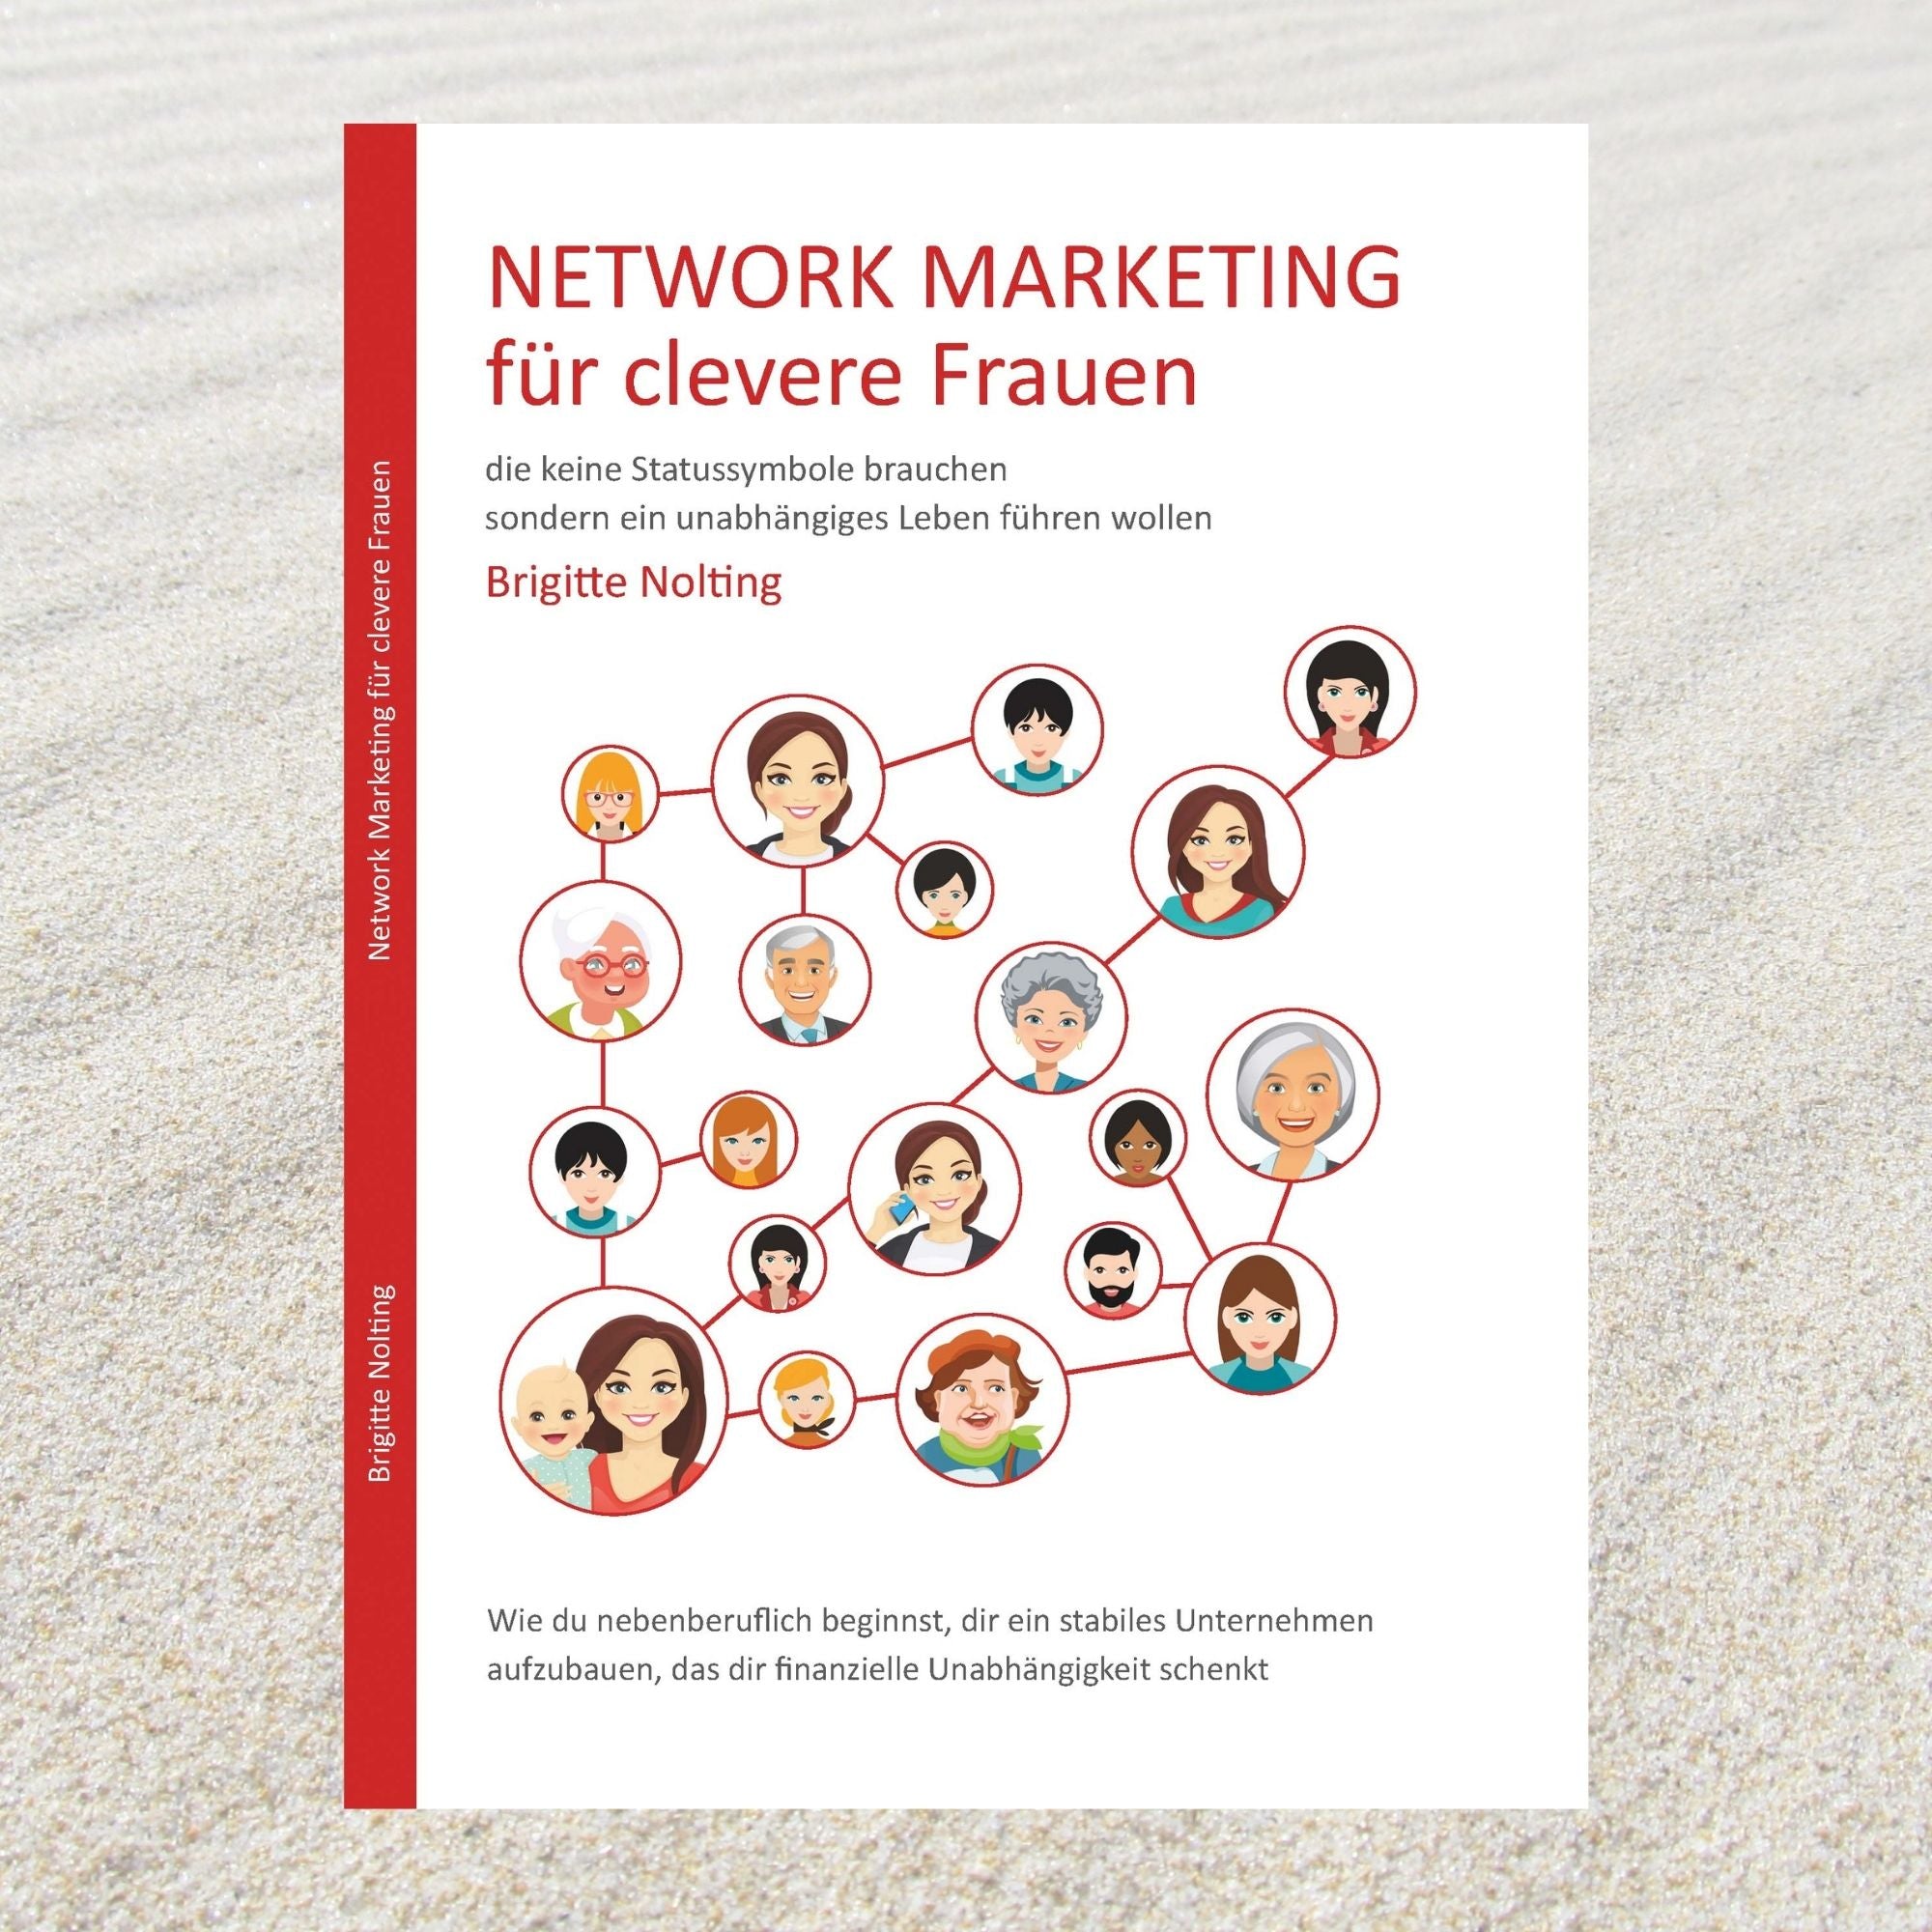 Network Marketing für clevere Frauen